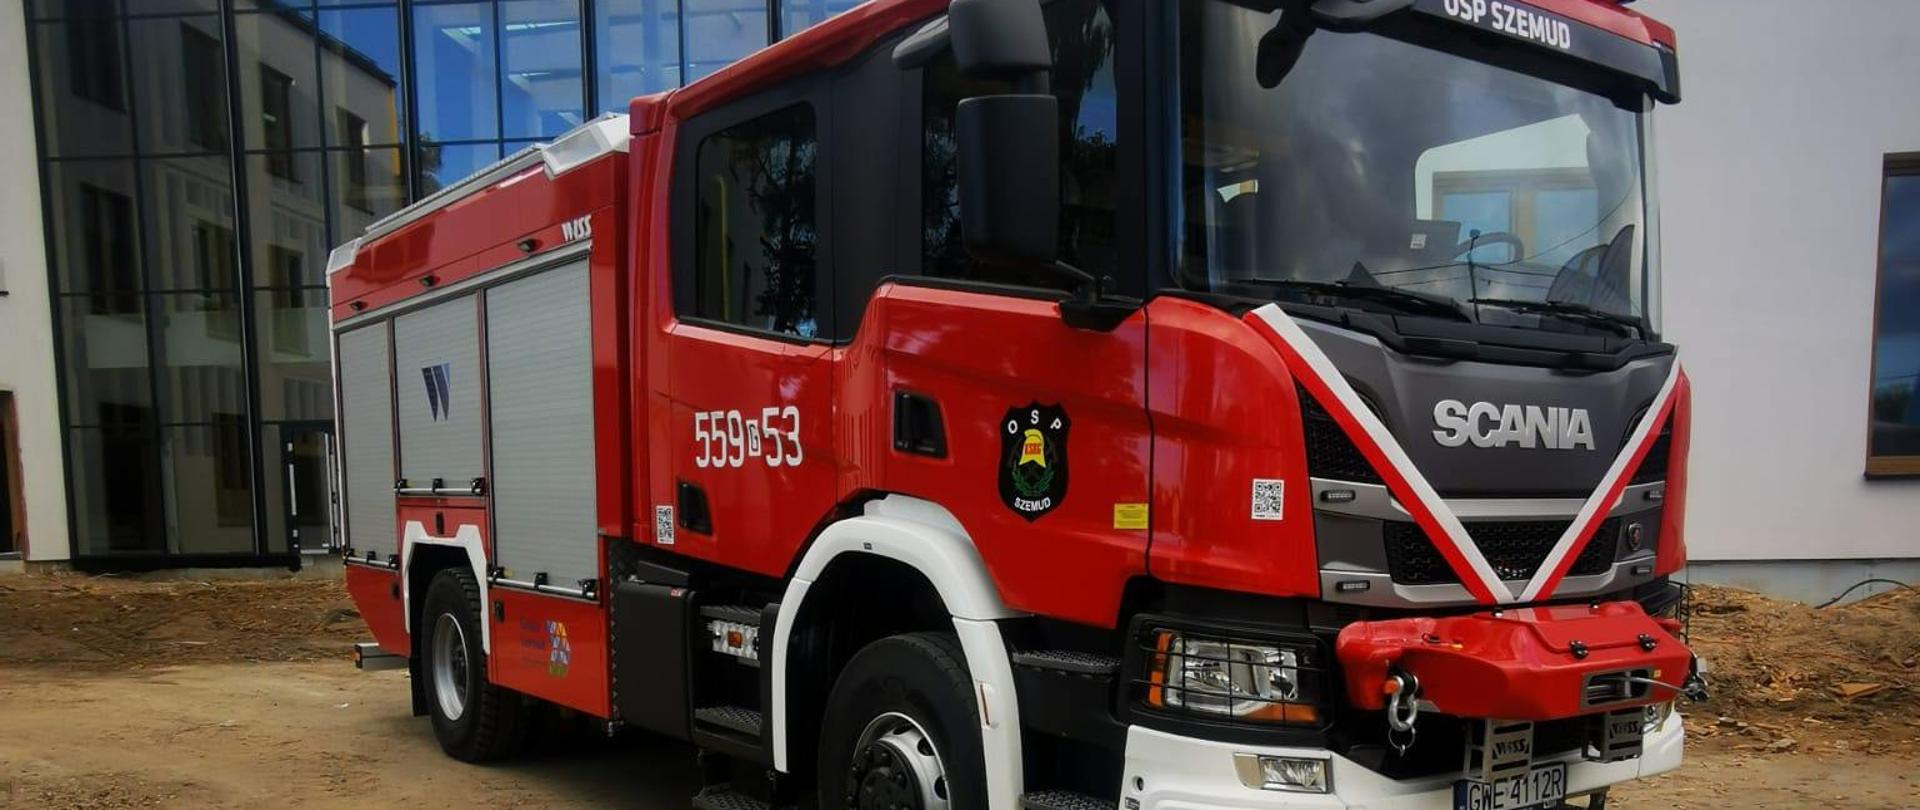 zdjęcie przedstawia nowy samochód pożarniczy przekazany dla OSP Szemud